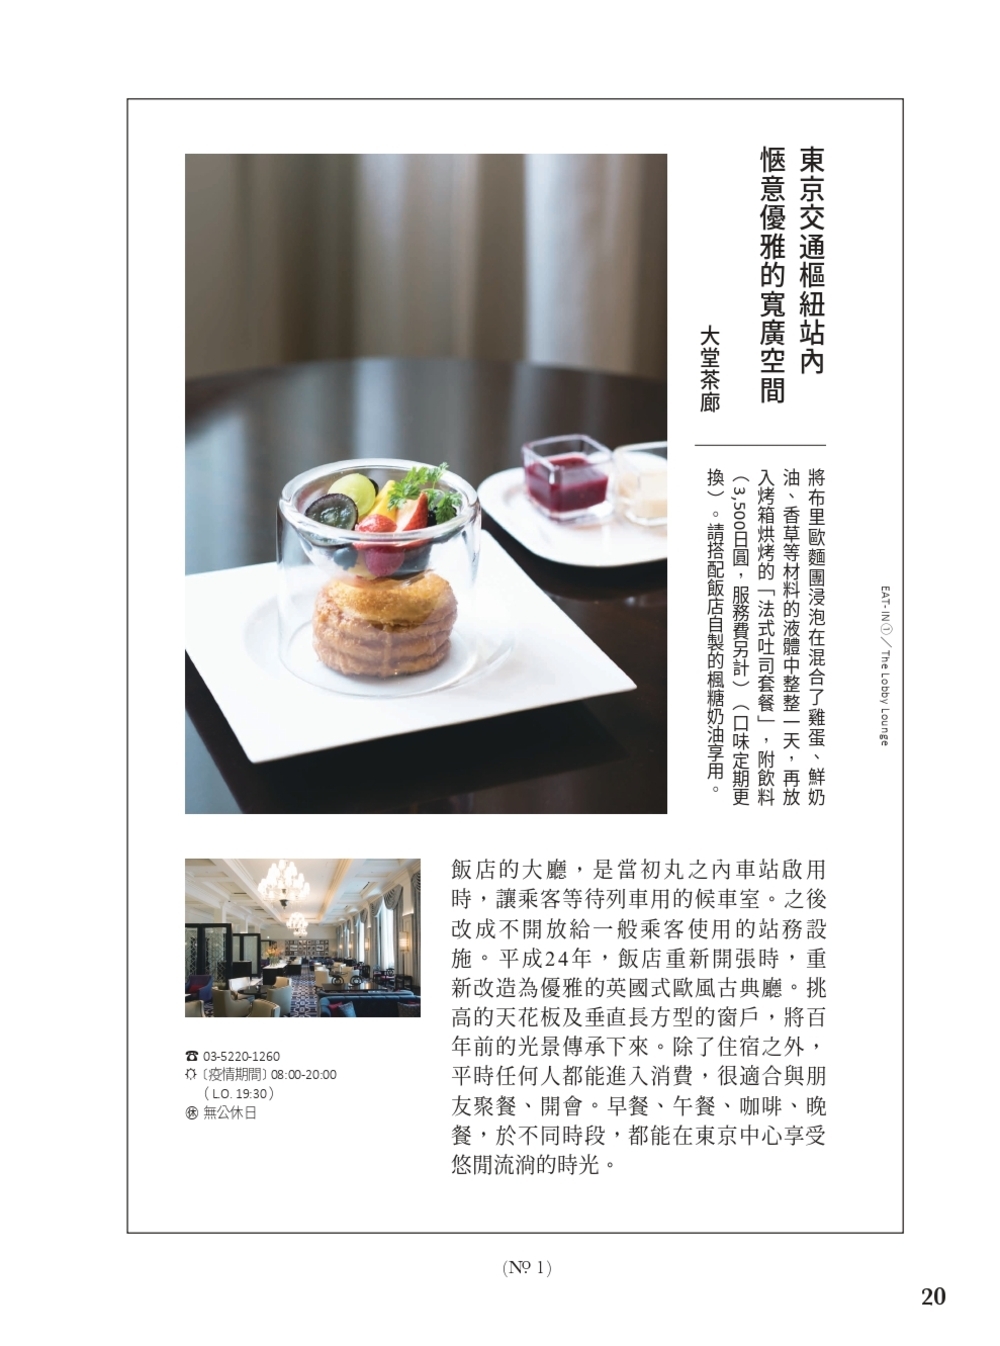 《東京名建築魅力巡禮》每篇最後還會分享名建築裡附設的餐廳、咖啡廳裡的特別餐點及獨家伴手禮推薦。（圖片來源/書籍內頁）